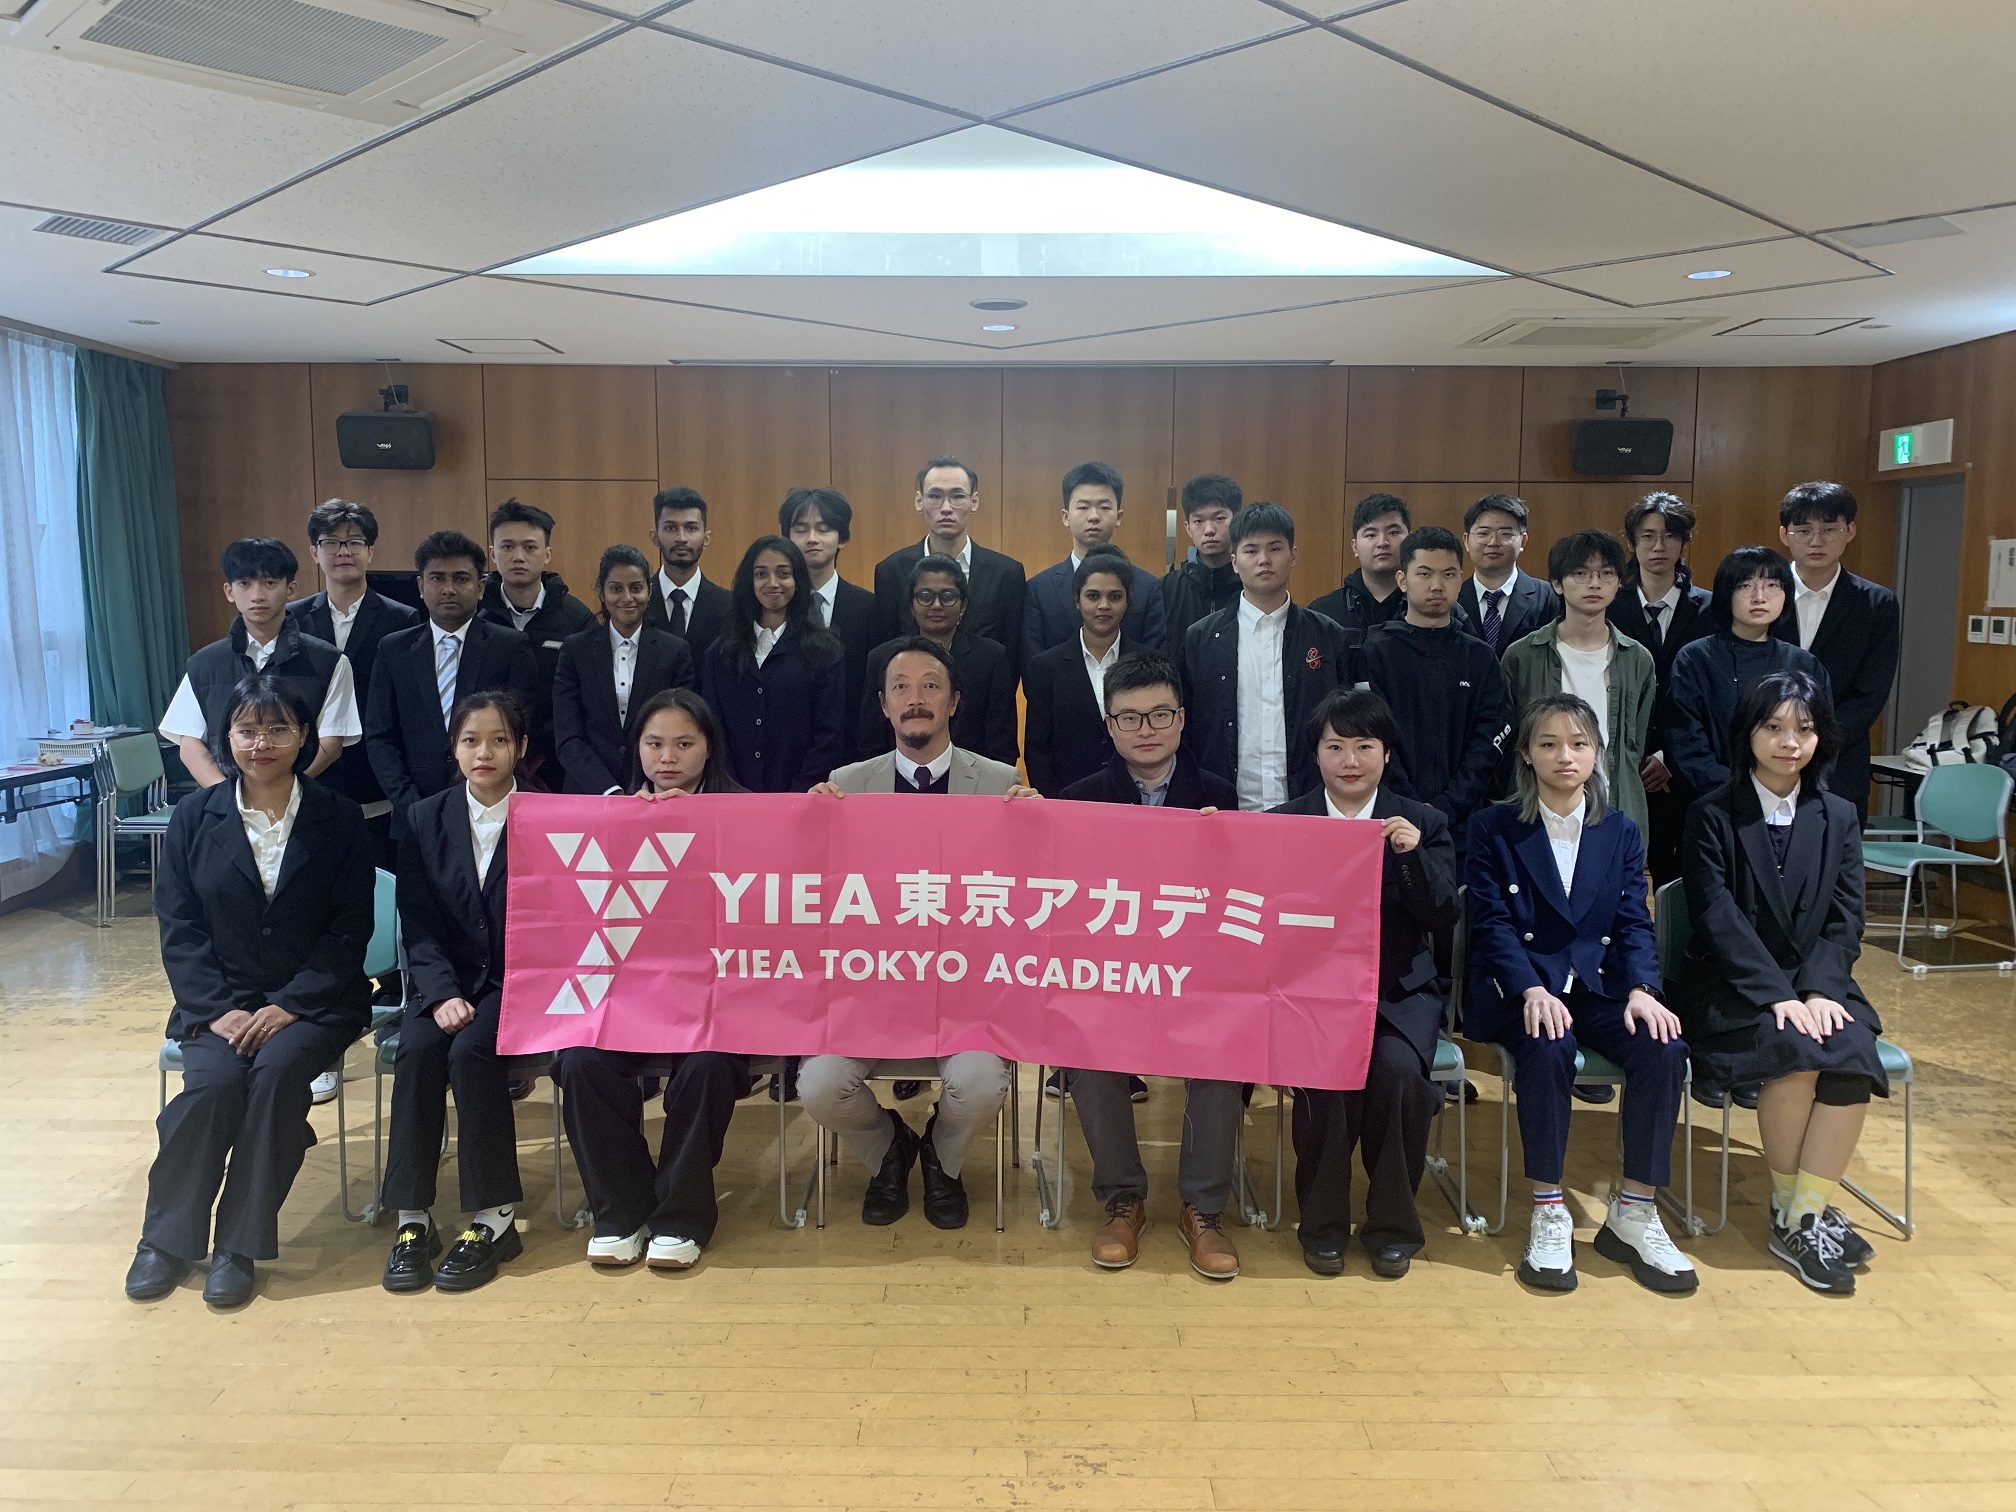 歡迎來到YIEA東京學院！